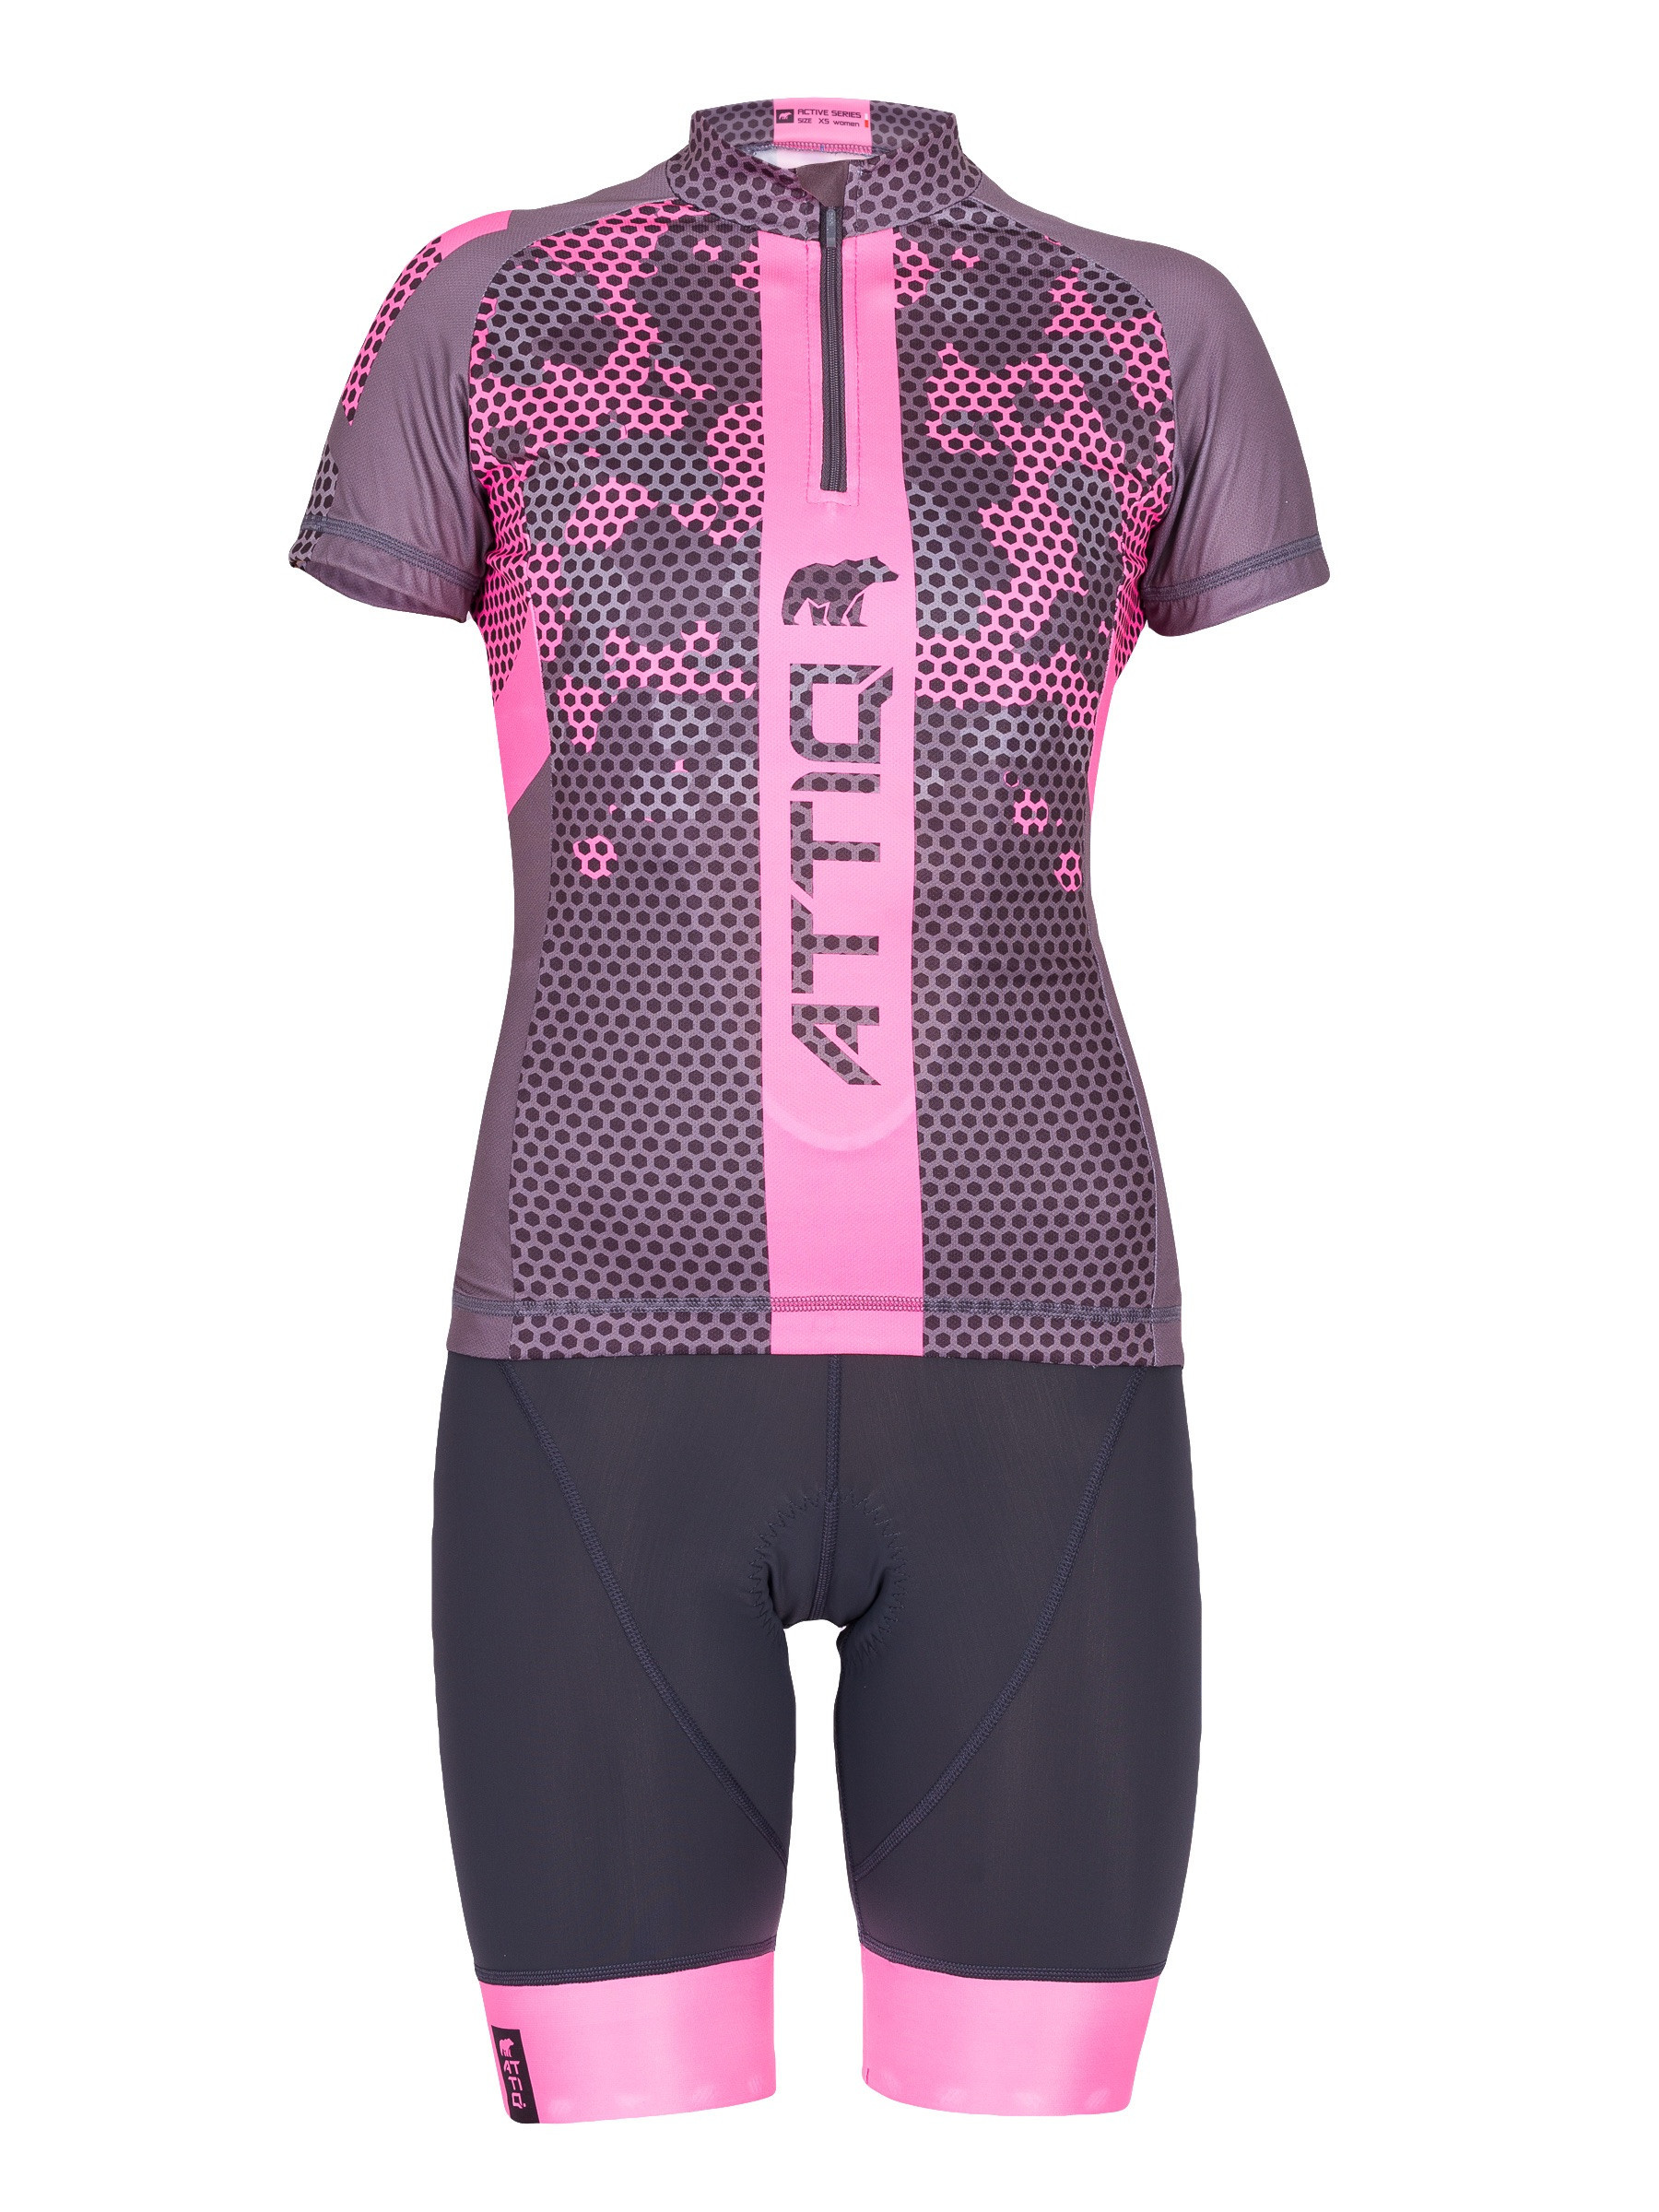 Ensemble maillot et bermuda Active de cyclisme féminins par Attiq (plusieurs coloris)